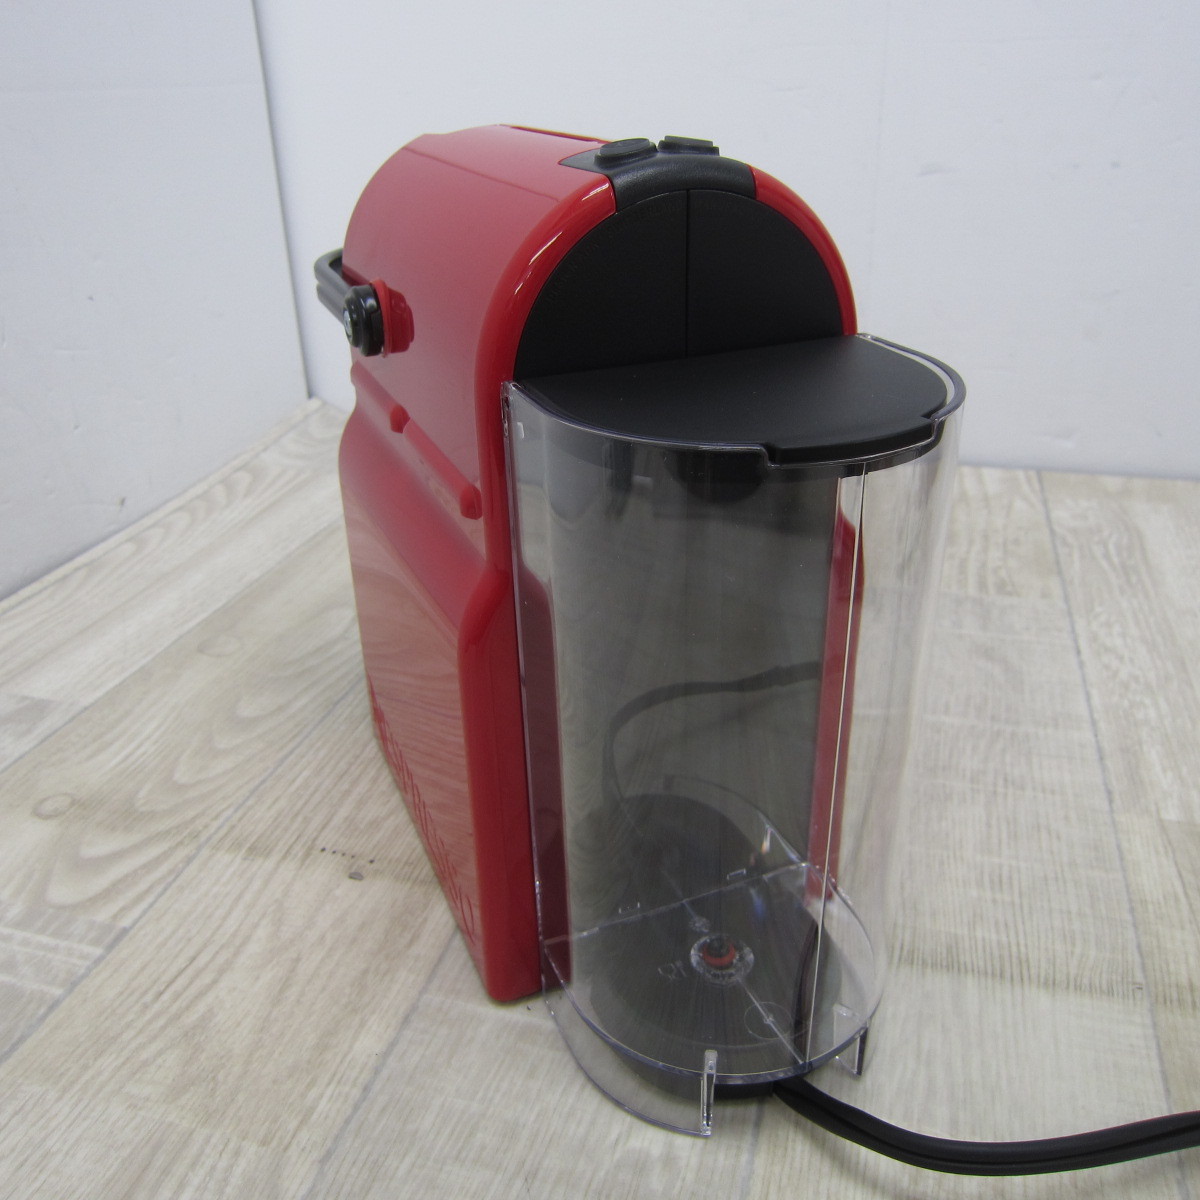 PS3201【未使用】ネスプレッソ カプセル式コーヒーメーカー イニッシア ルビーレッド 水タンク容量0.6L コンパクト 軽量 C40-RE-W 